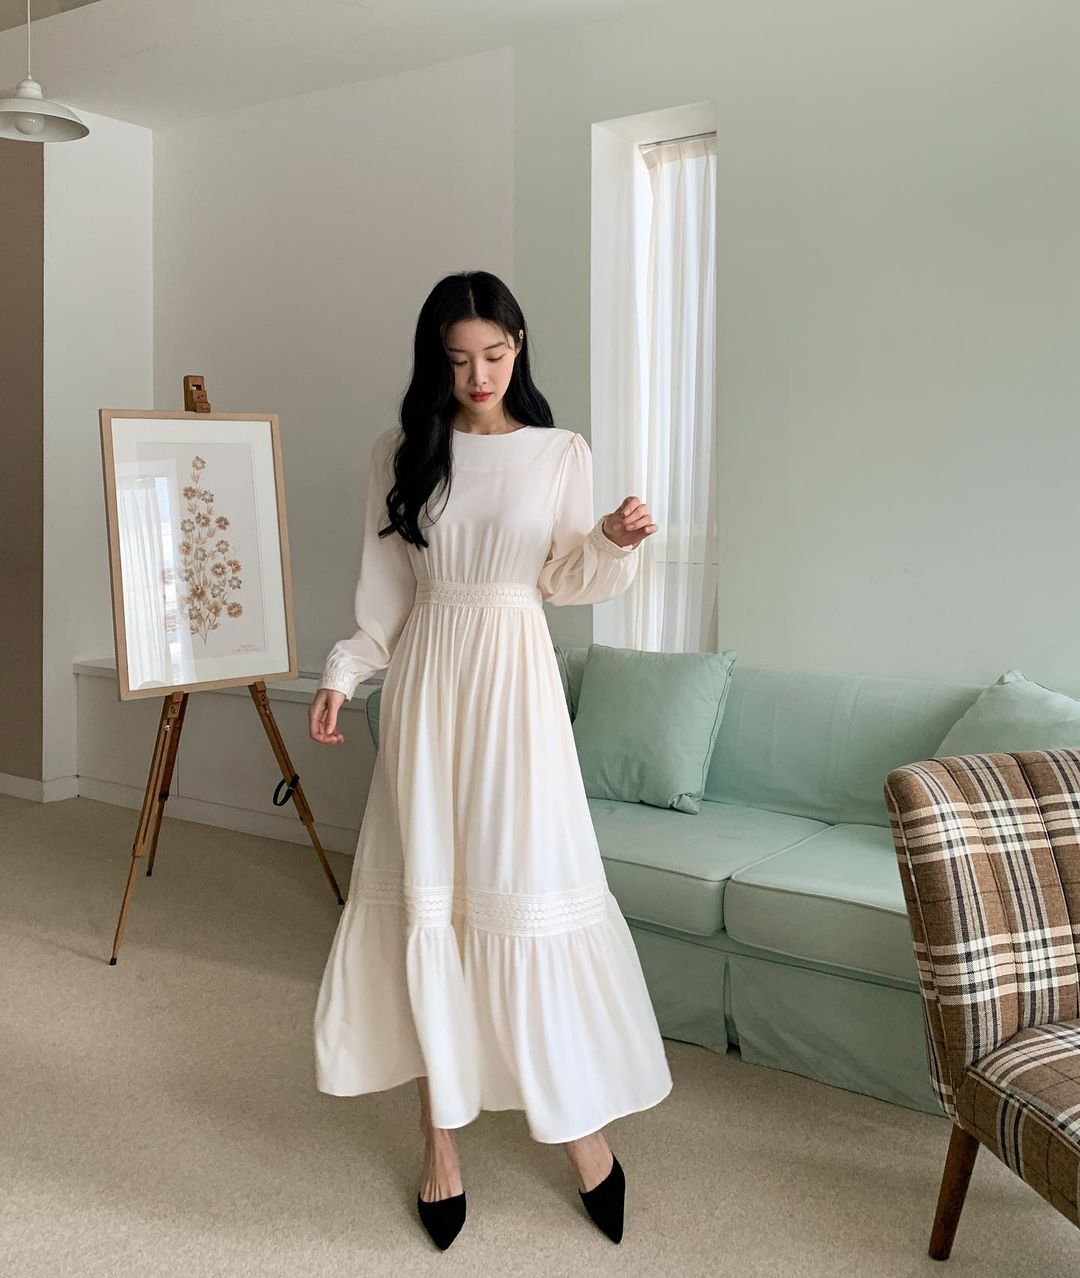 Hè đến là gái Hàn lại diện đủ kiểu váy trắng siêu trẻ xinh và tinh tế, xem mà muốn sắm cả 'lố' về nhà - Ảnh 3